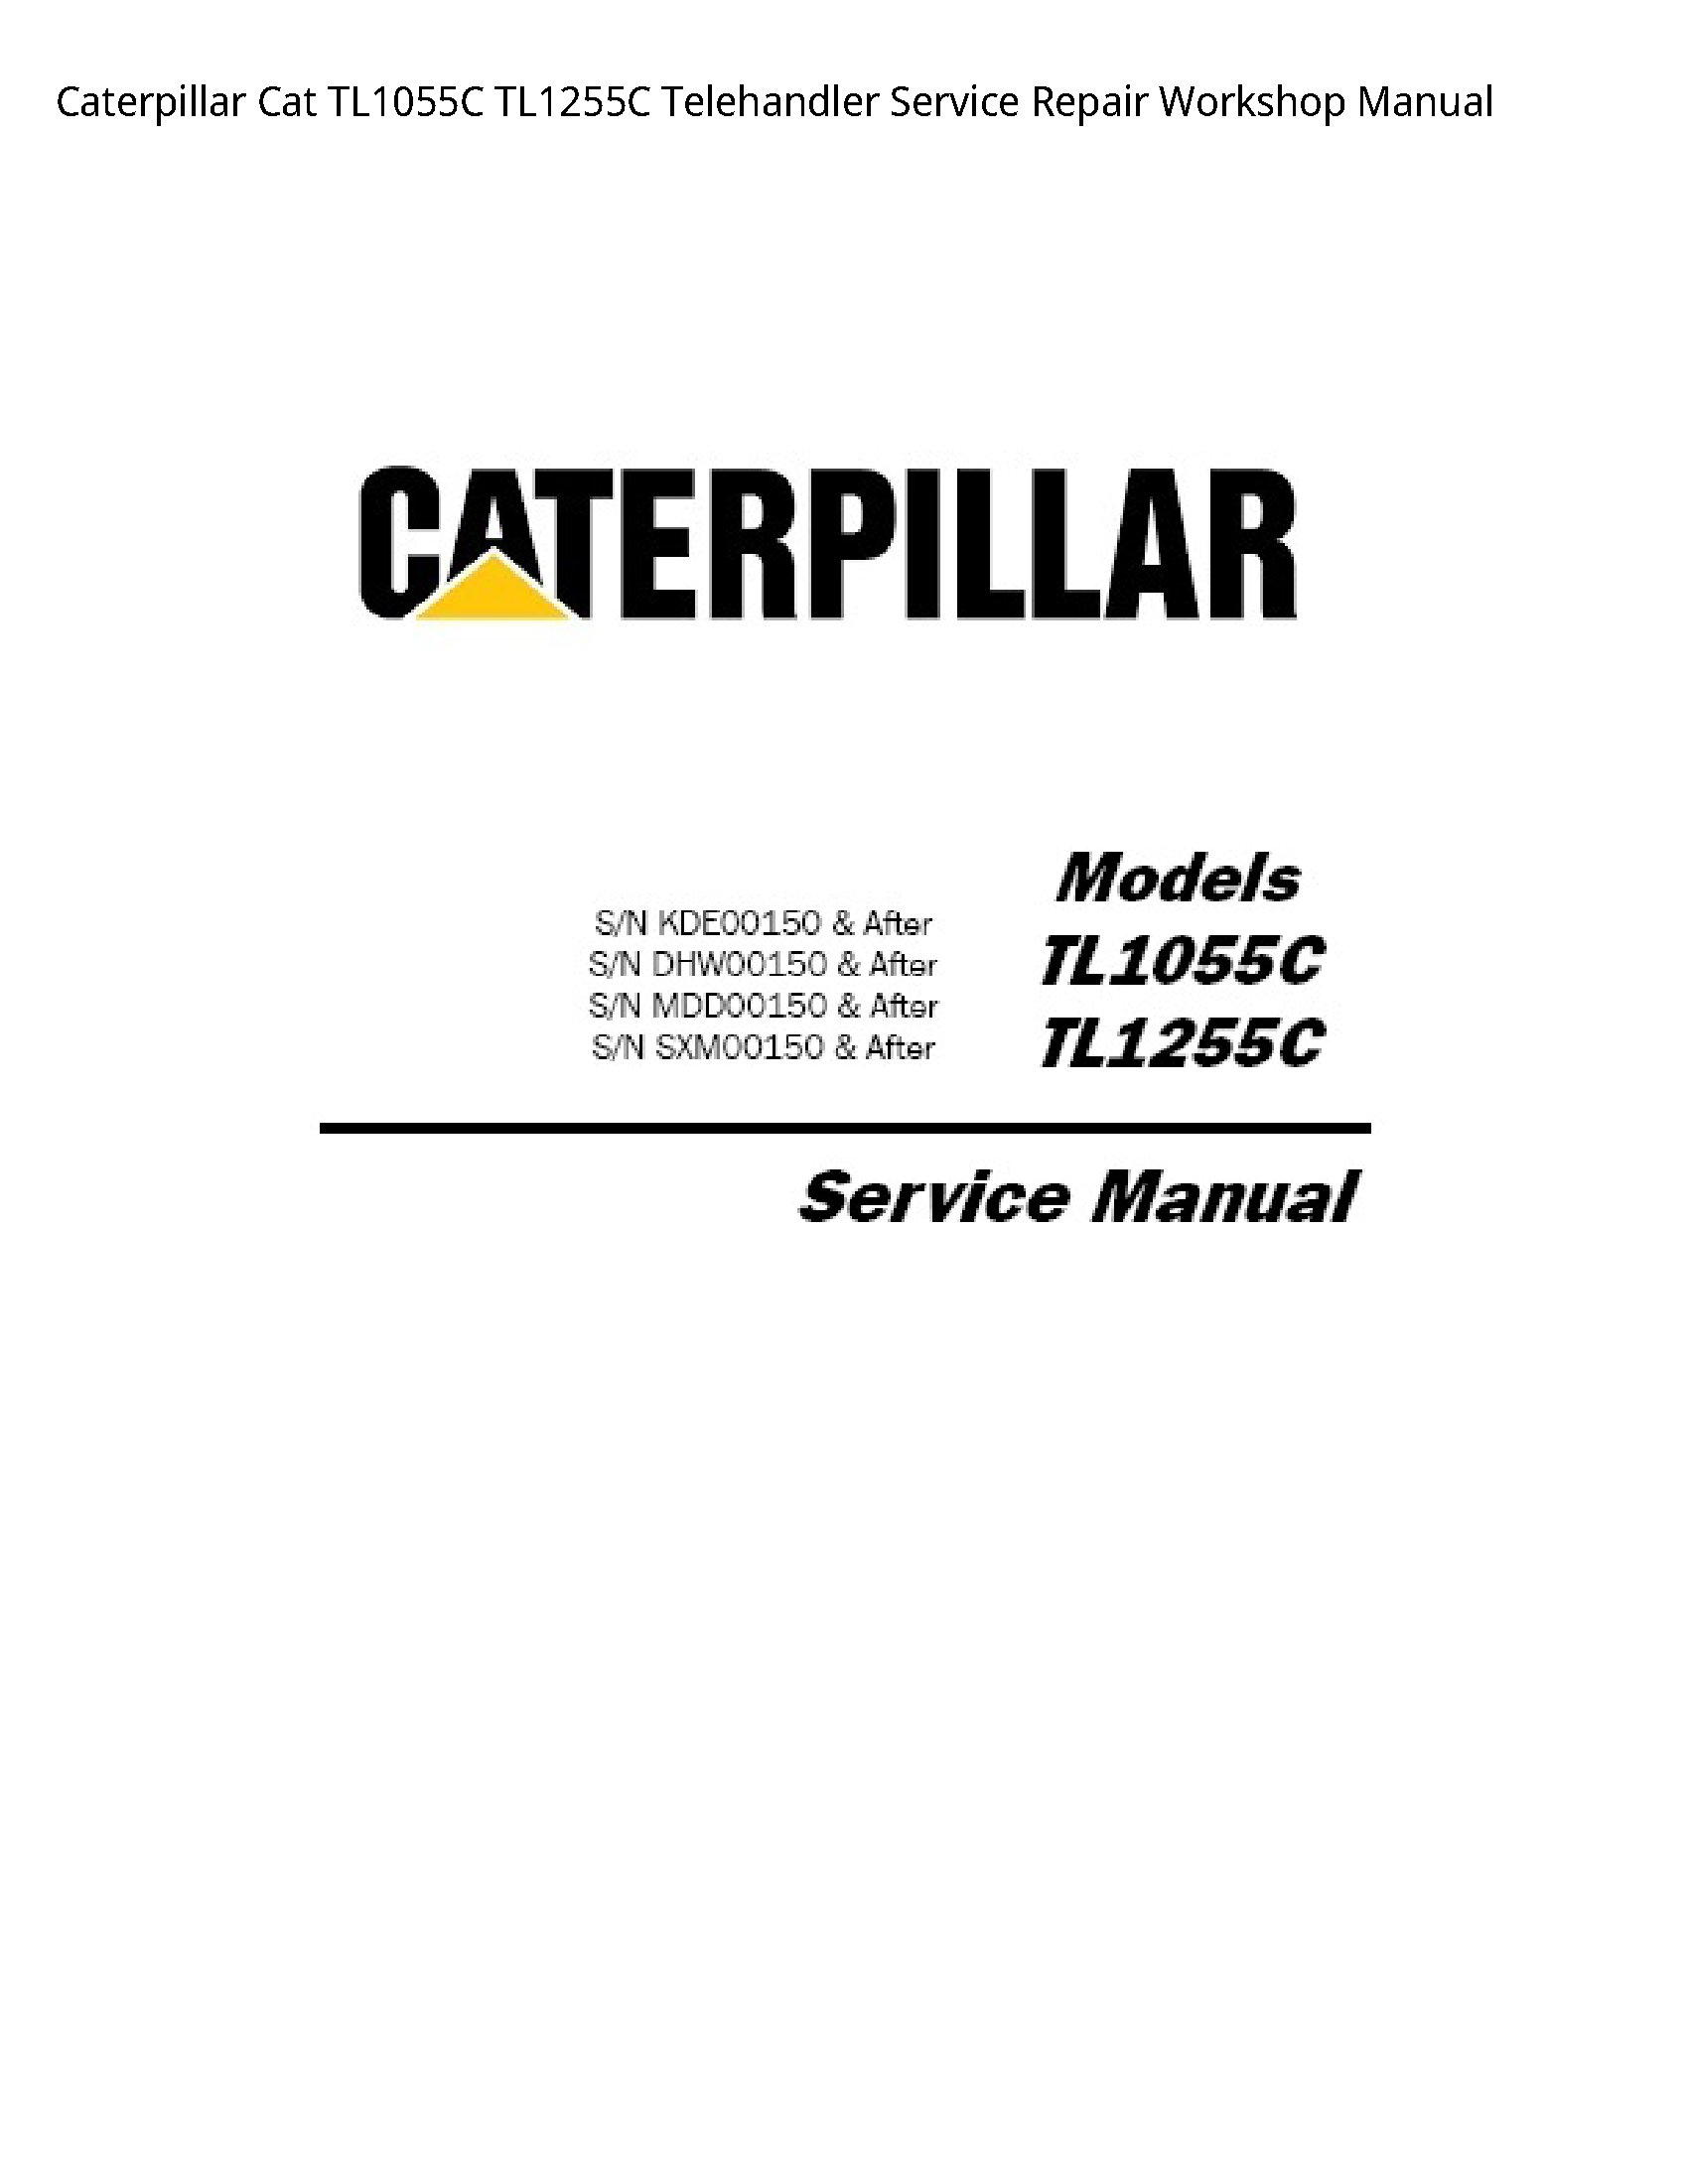 Caterpillar TL1055C Cat Telehandler manual